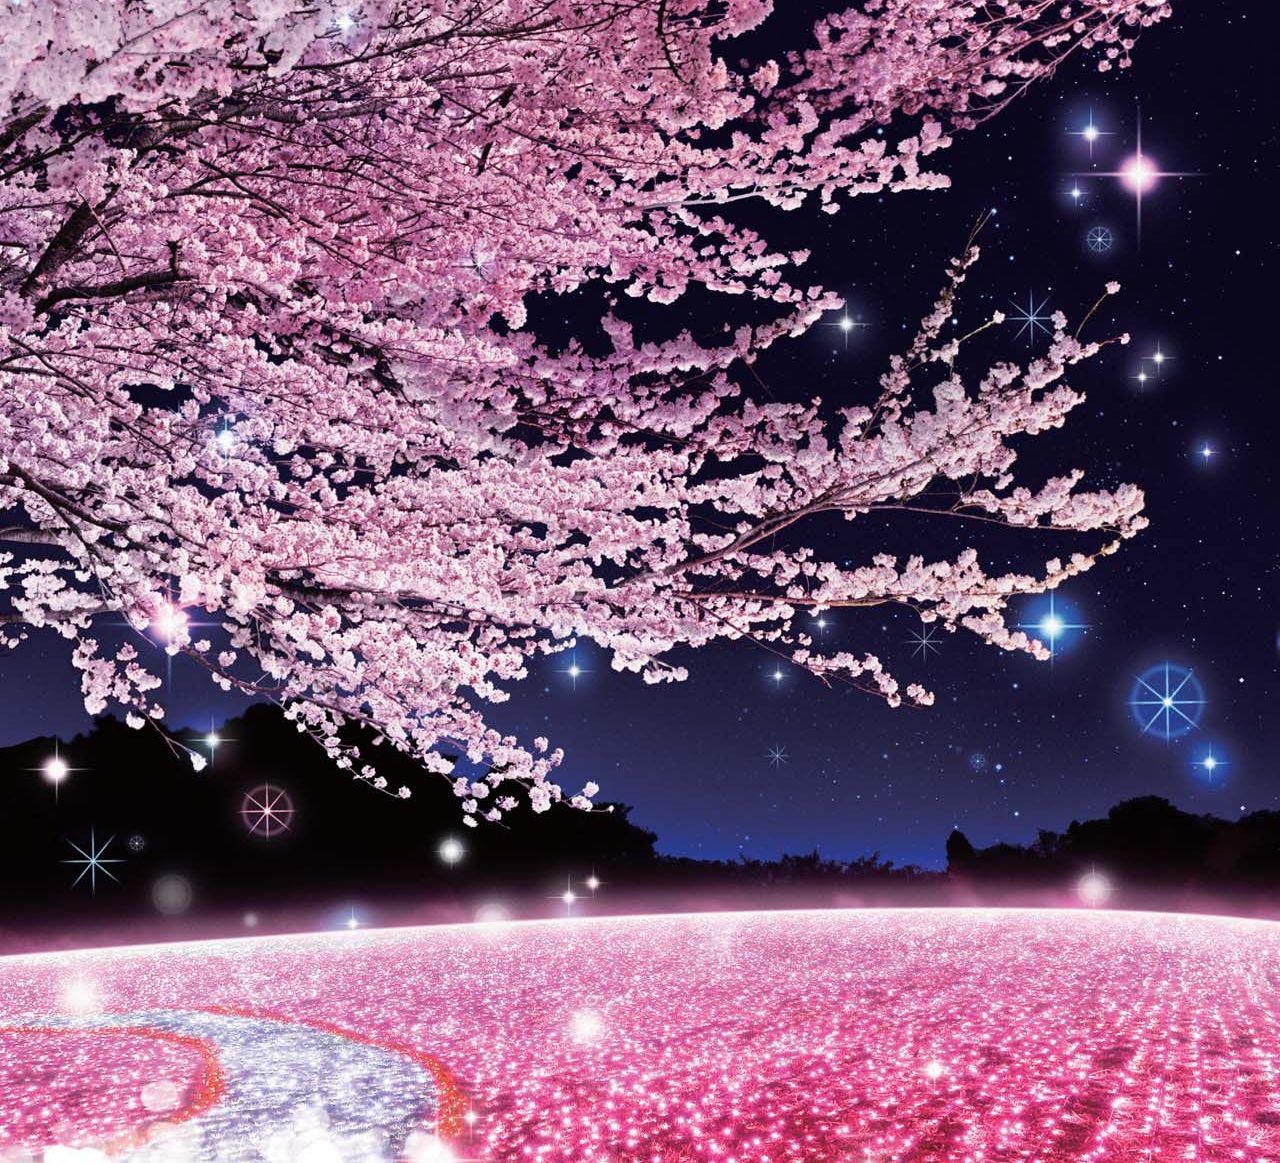 関東最大級300万球のイルミネーションと2 000本の桜のコラボレーション さがみ湖イルミリオン 夜桜イルミネーション 富士急行のプレスリリース